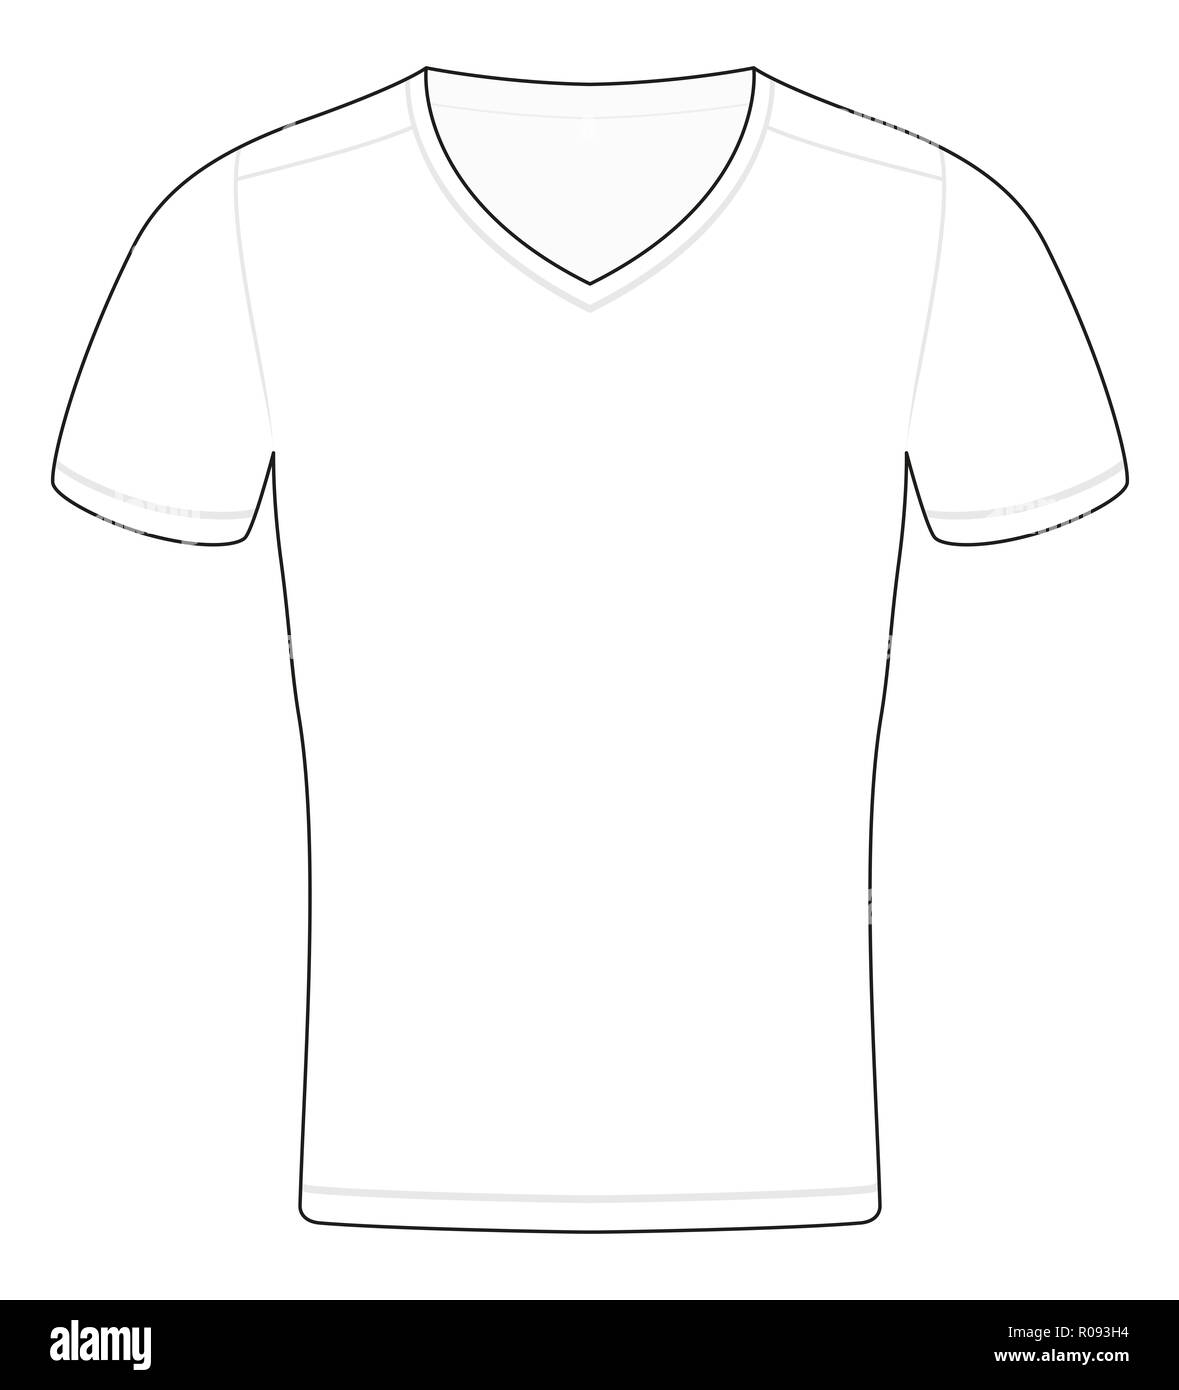 T-Shirt Vorlage. Überblick Abbildung: schematische Beispiel gefärbt werden, beschriftet oder abgebildeten - Abbildung auf weißem Hintergrund. Stockfoto